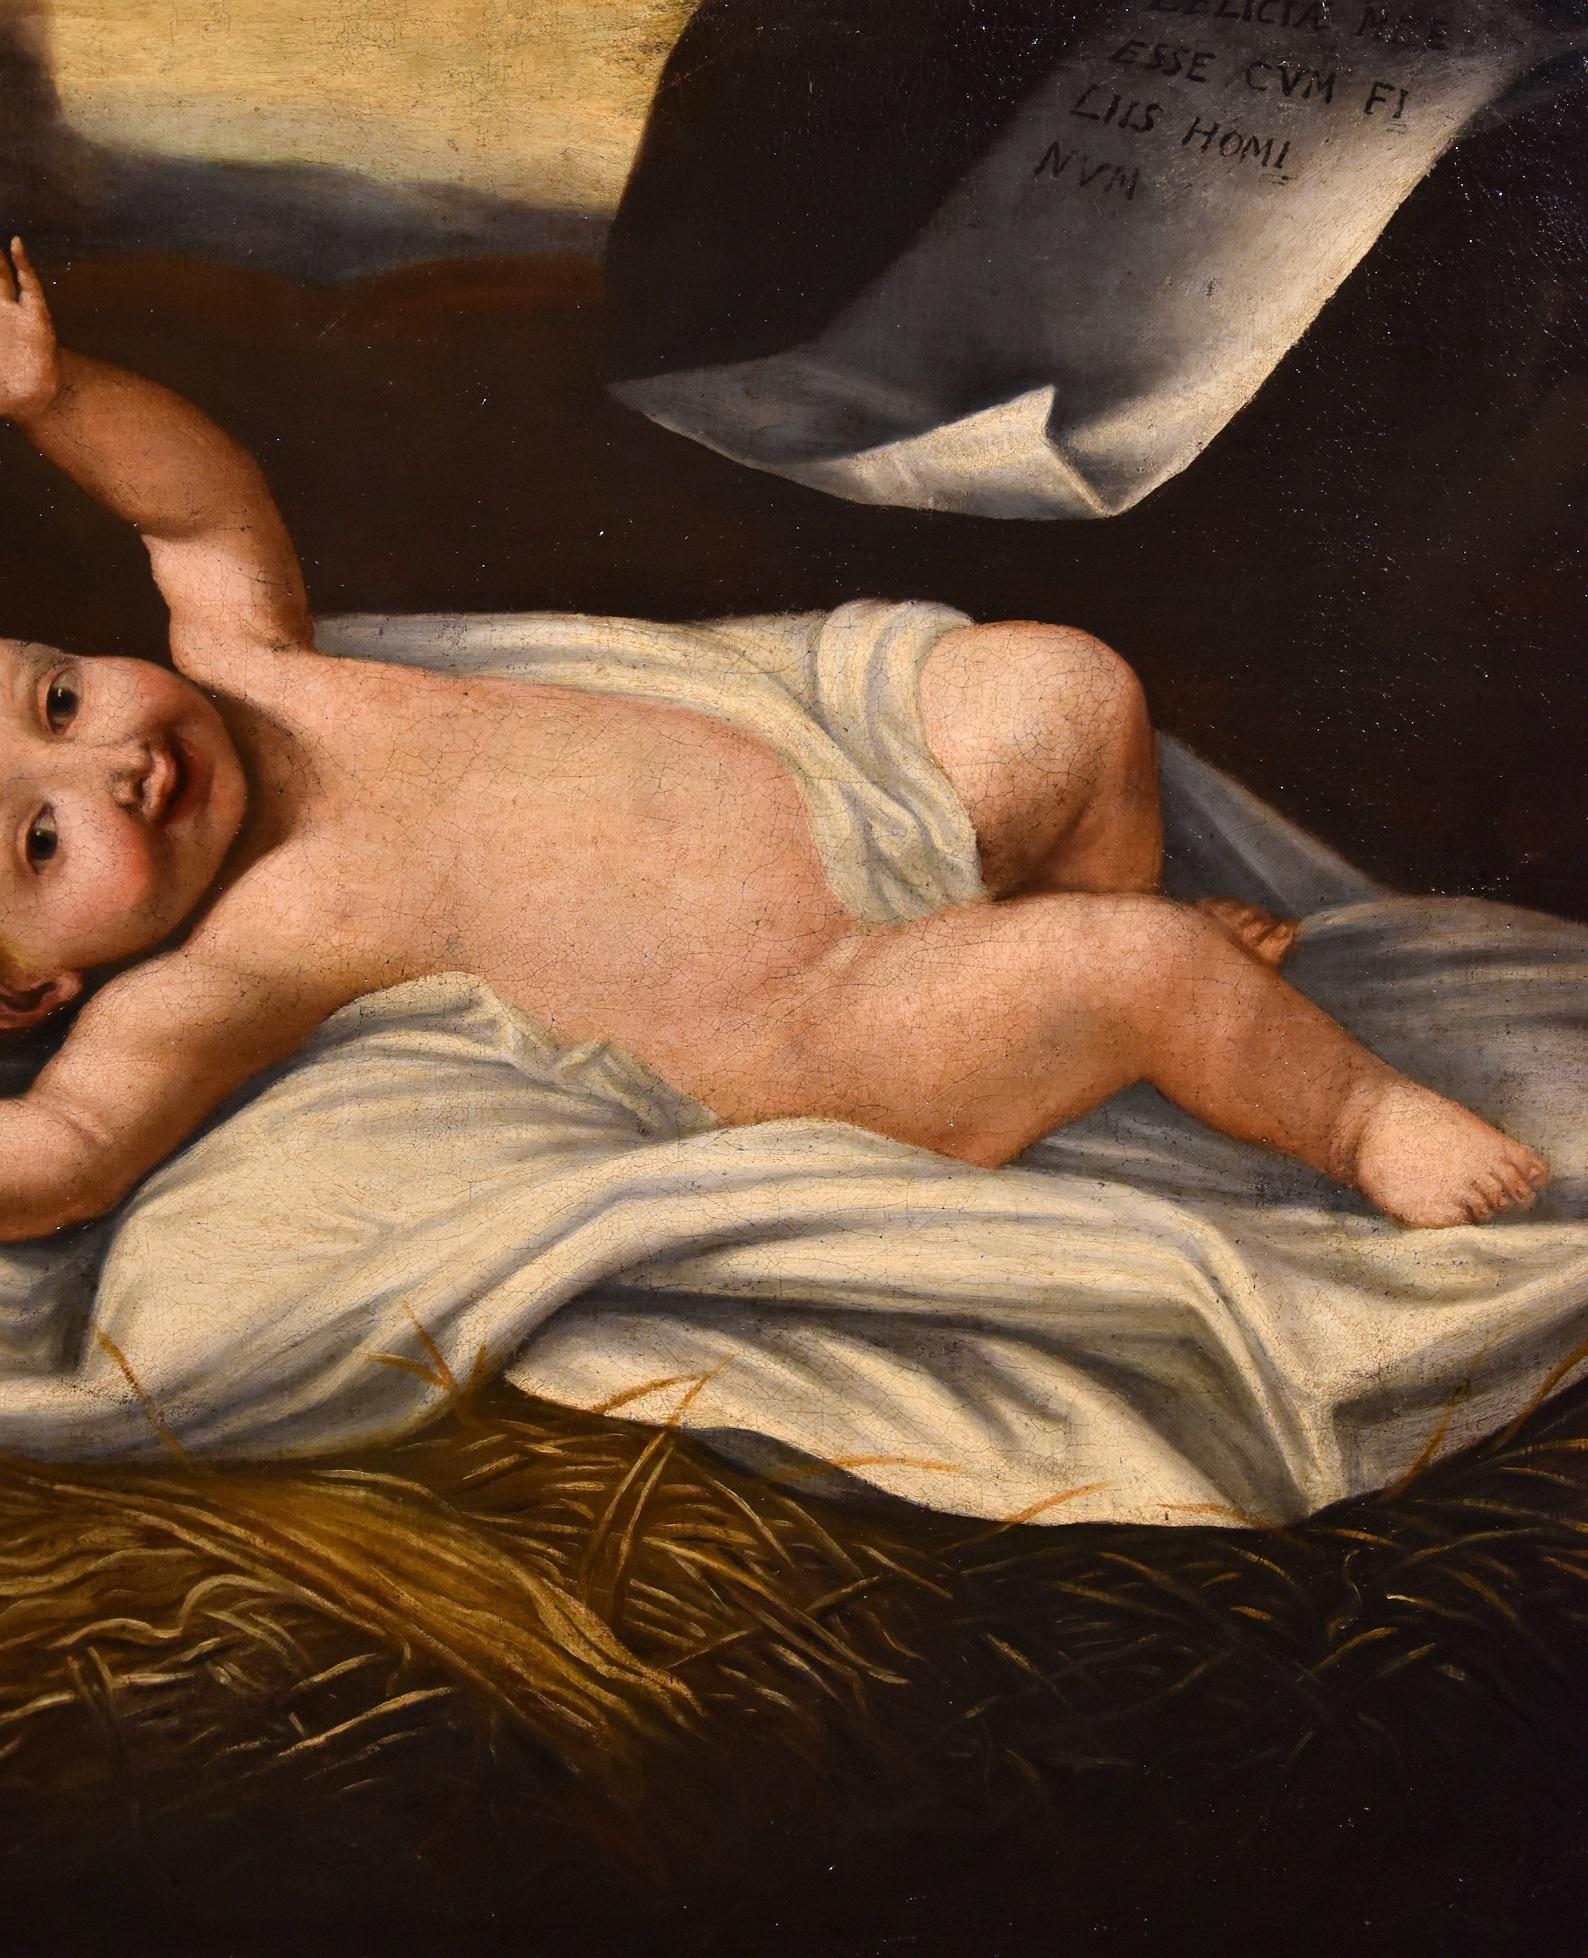 Lombardischer Maler, tätig im 17. Jahrhundert
Jesuskind

Ölgemälde auf Leinwand
70 x 82 cm. - In antikem Rahmen 78 x 91 cm.

Dieses Gemälde stellt ein ungewöhnliches und angenehmes ikonografisches Thema dar, das gelegentlich von der christlichen